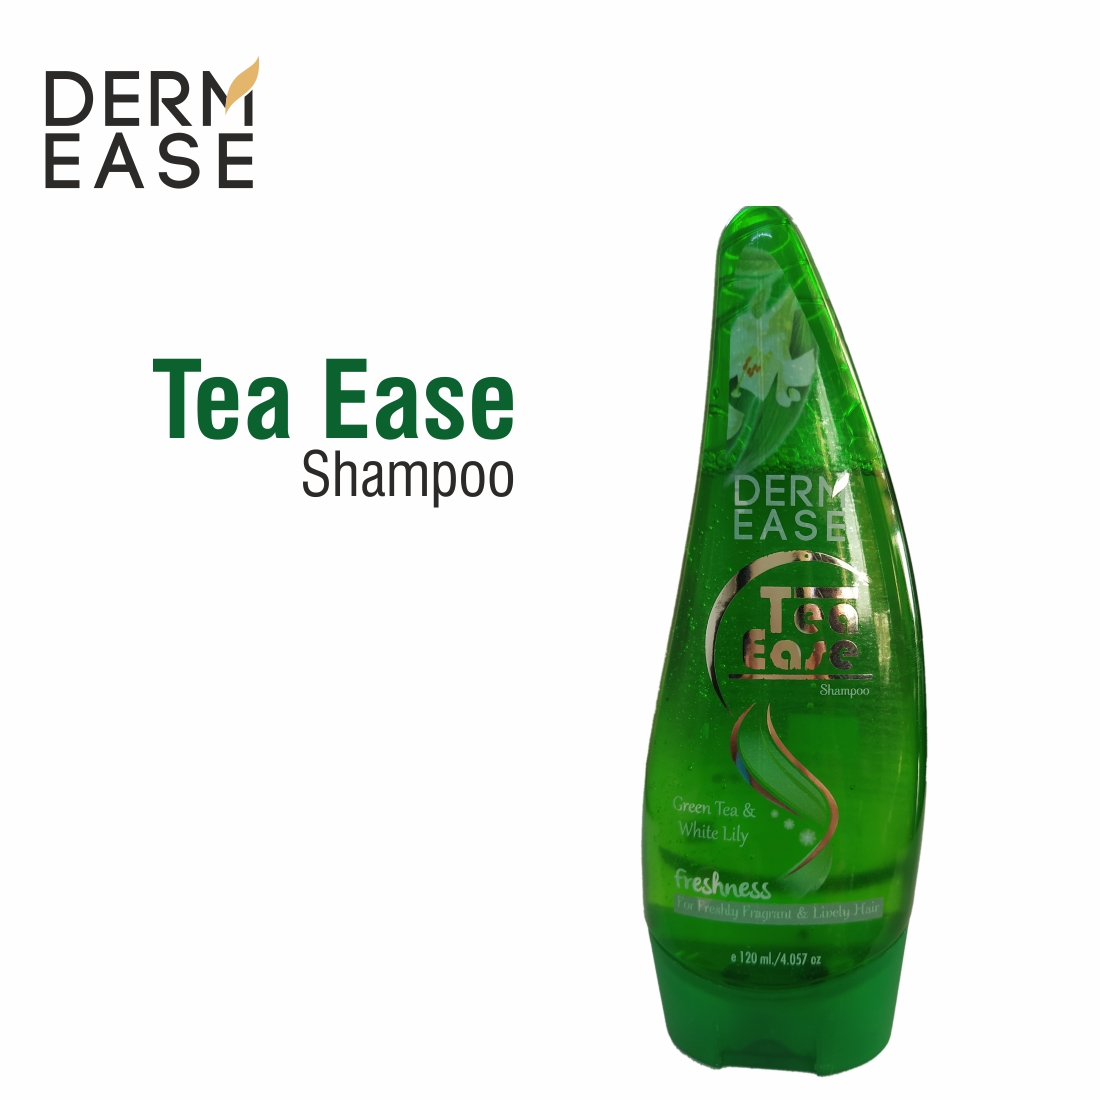 DERM EASE Tea Ease Shampoo